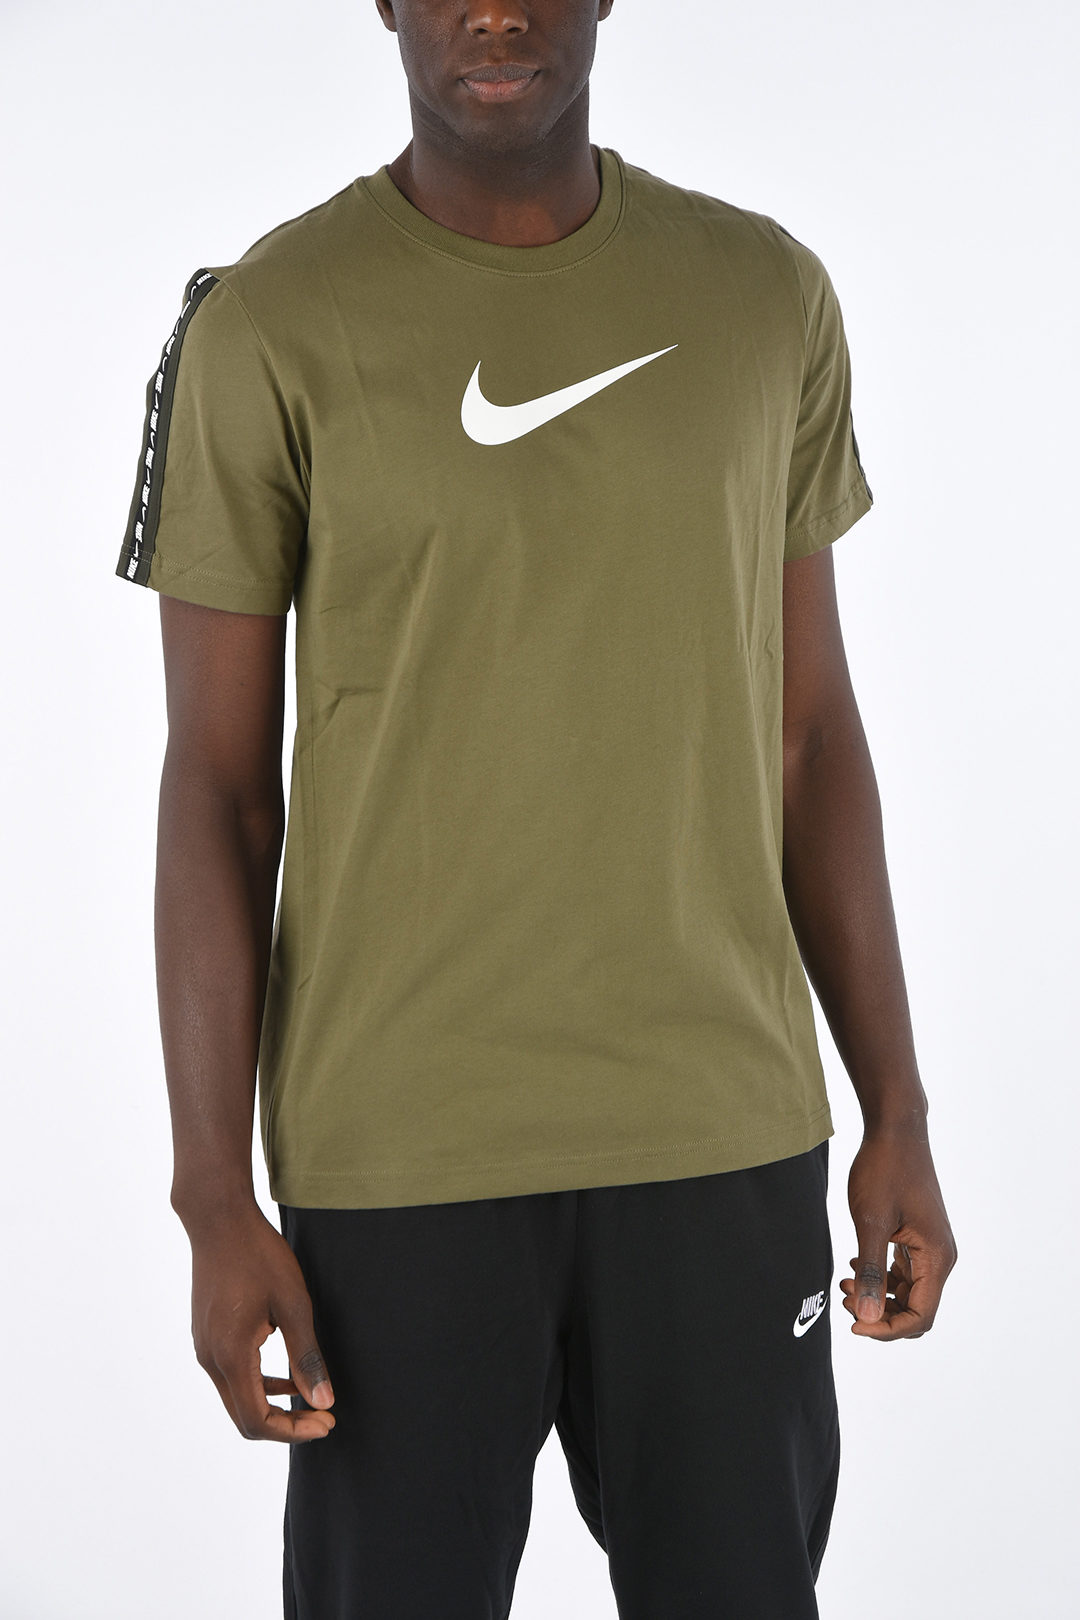 Nike T-shirt - Glamood Outlet